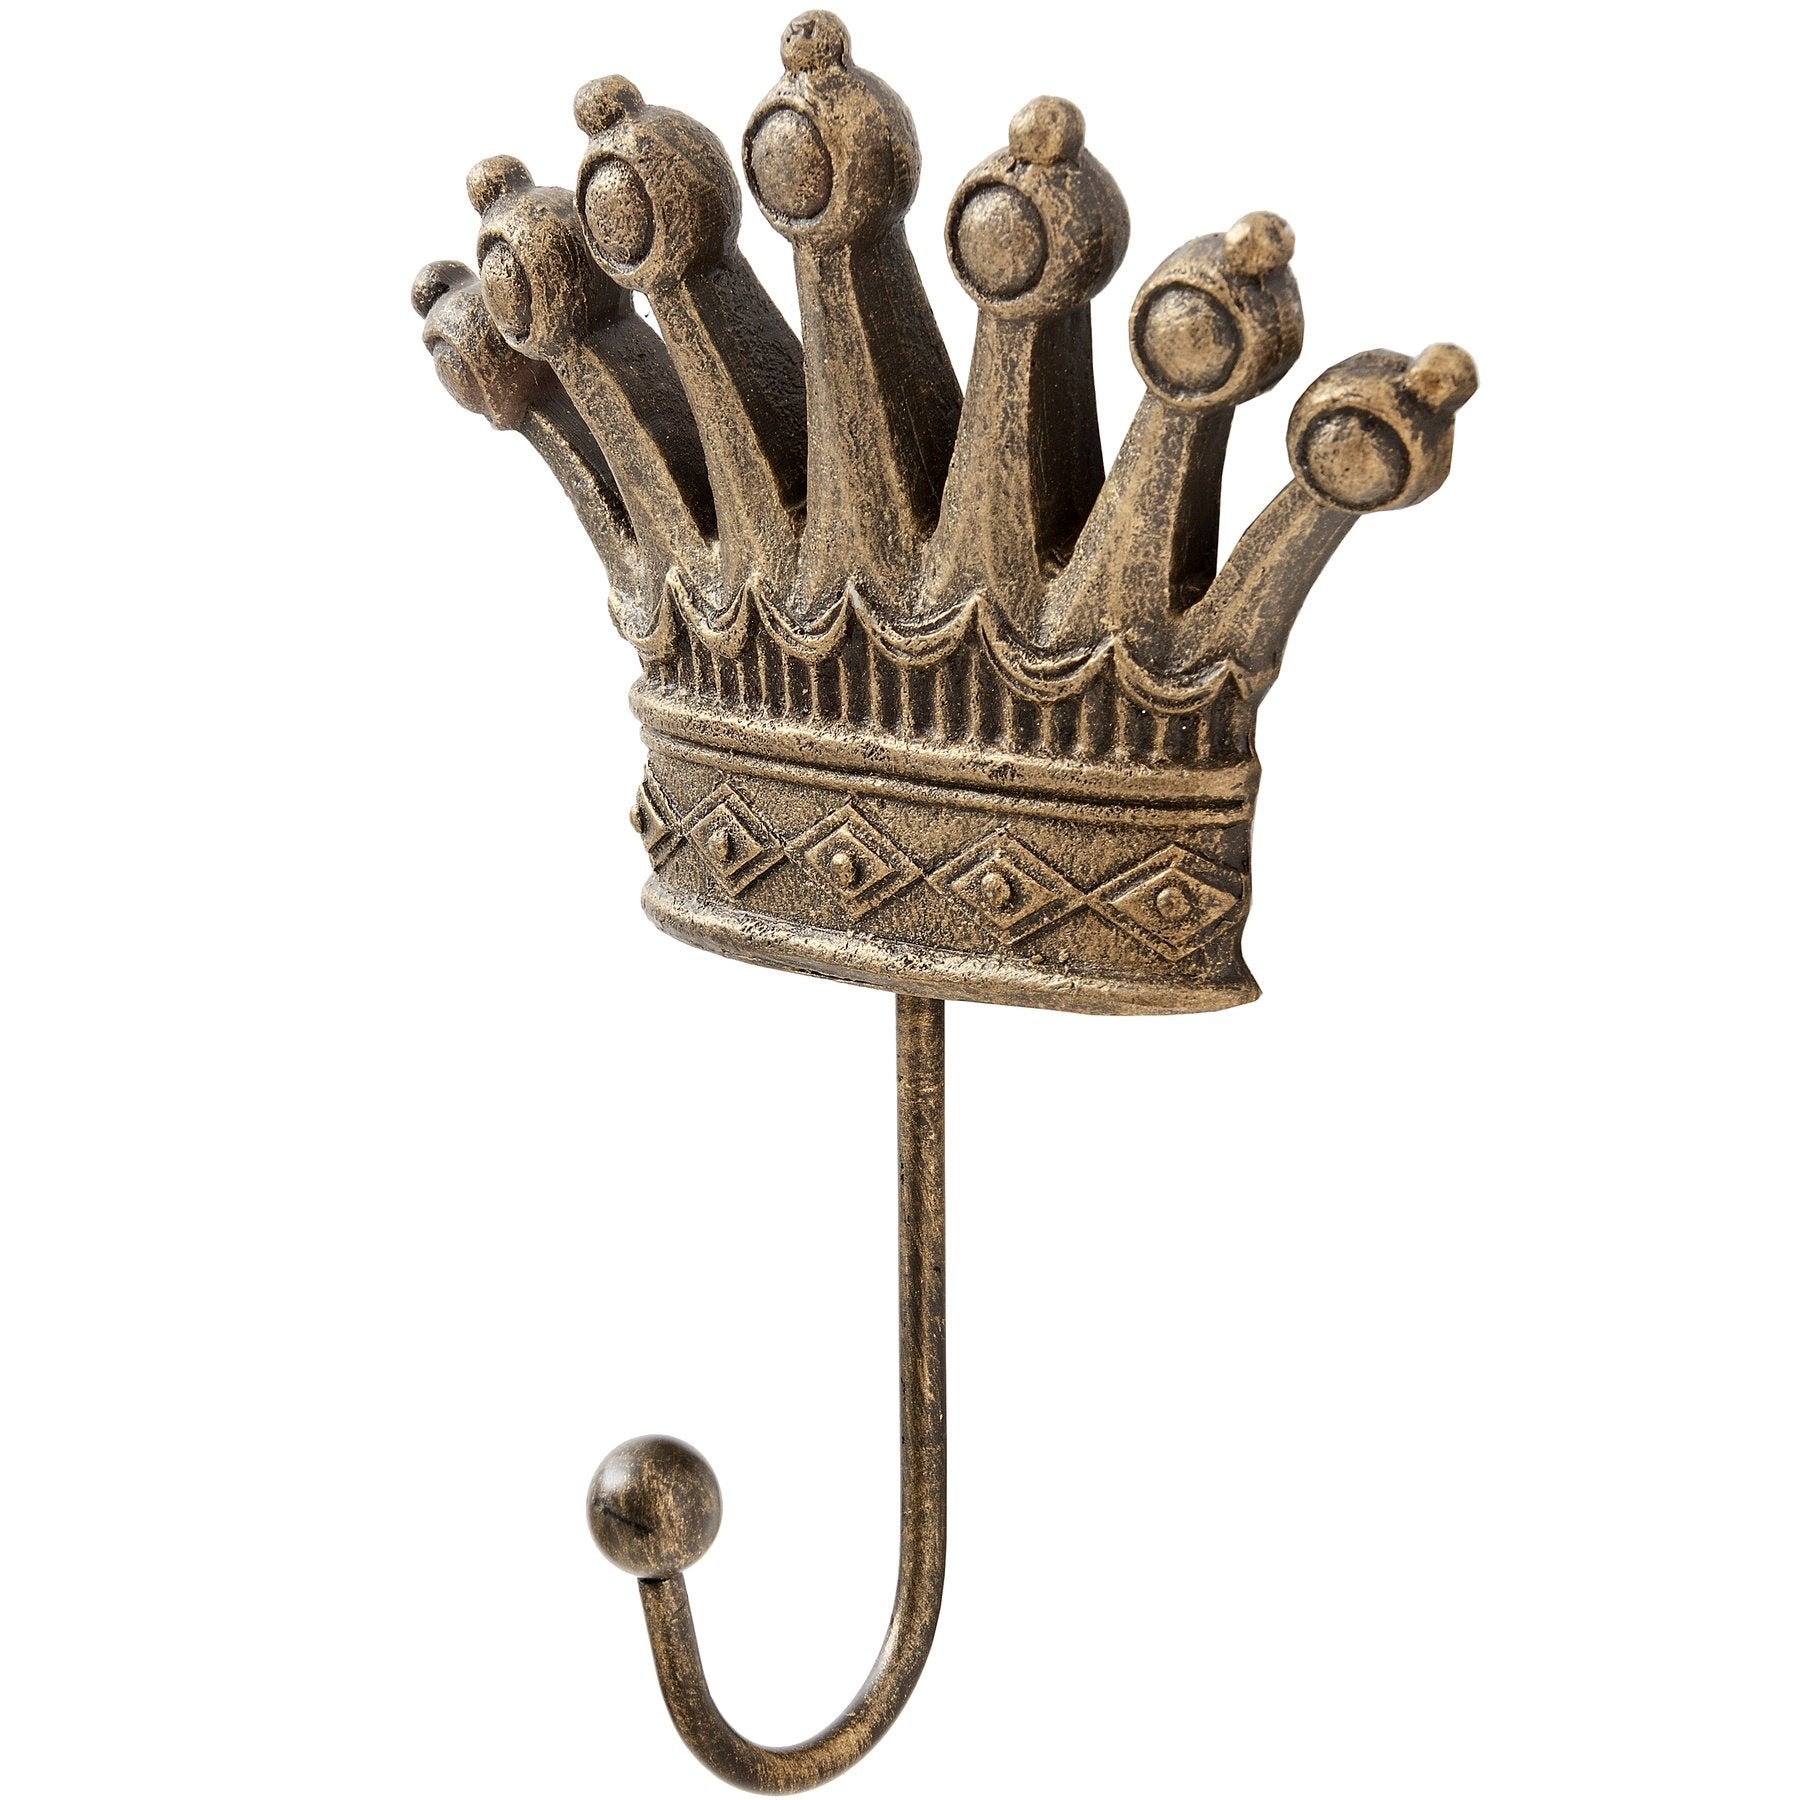 King & Queen Antique Gold Crown Coat Hooks